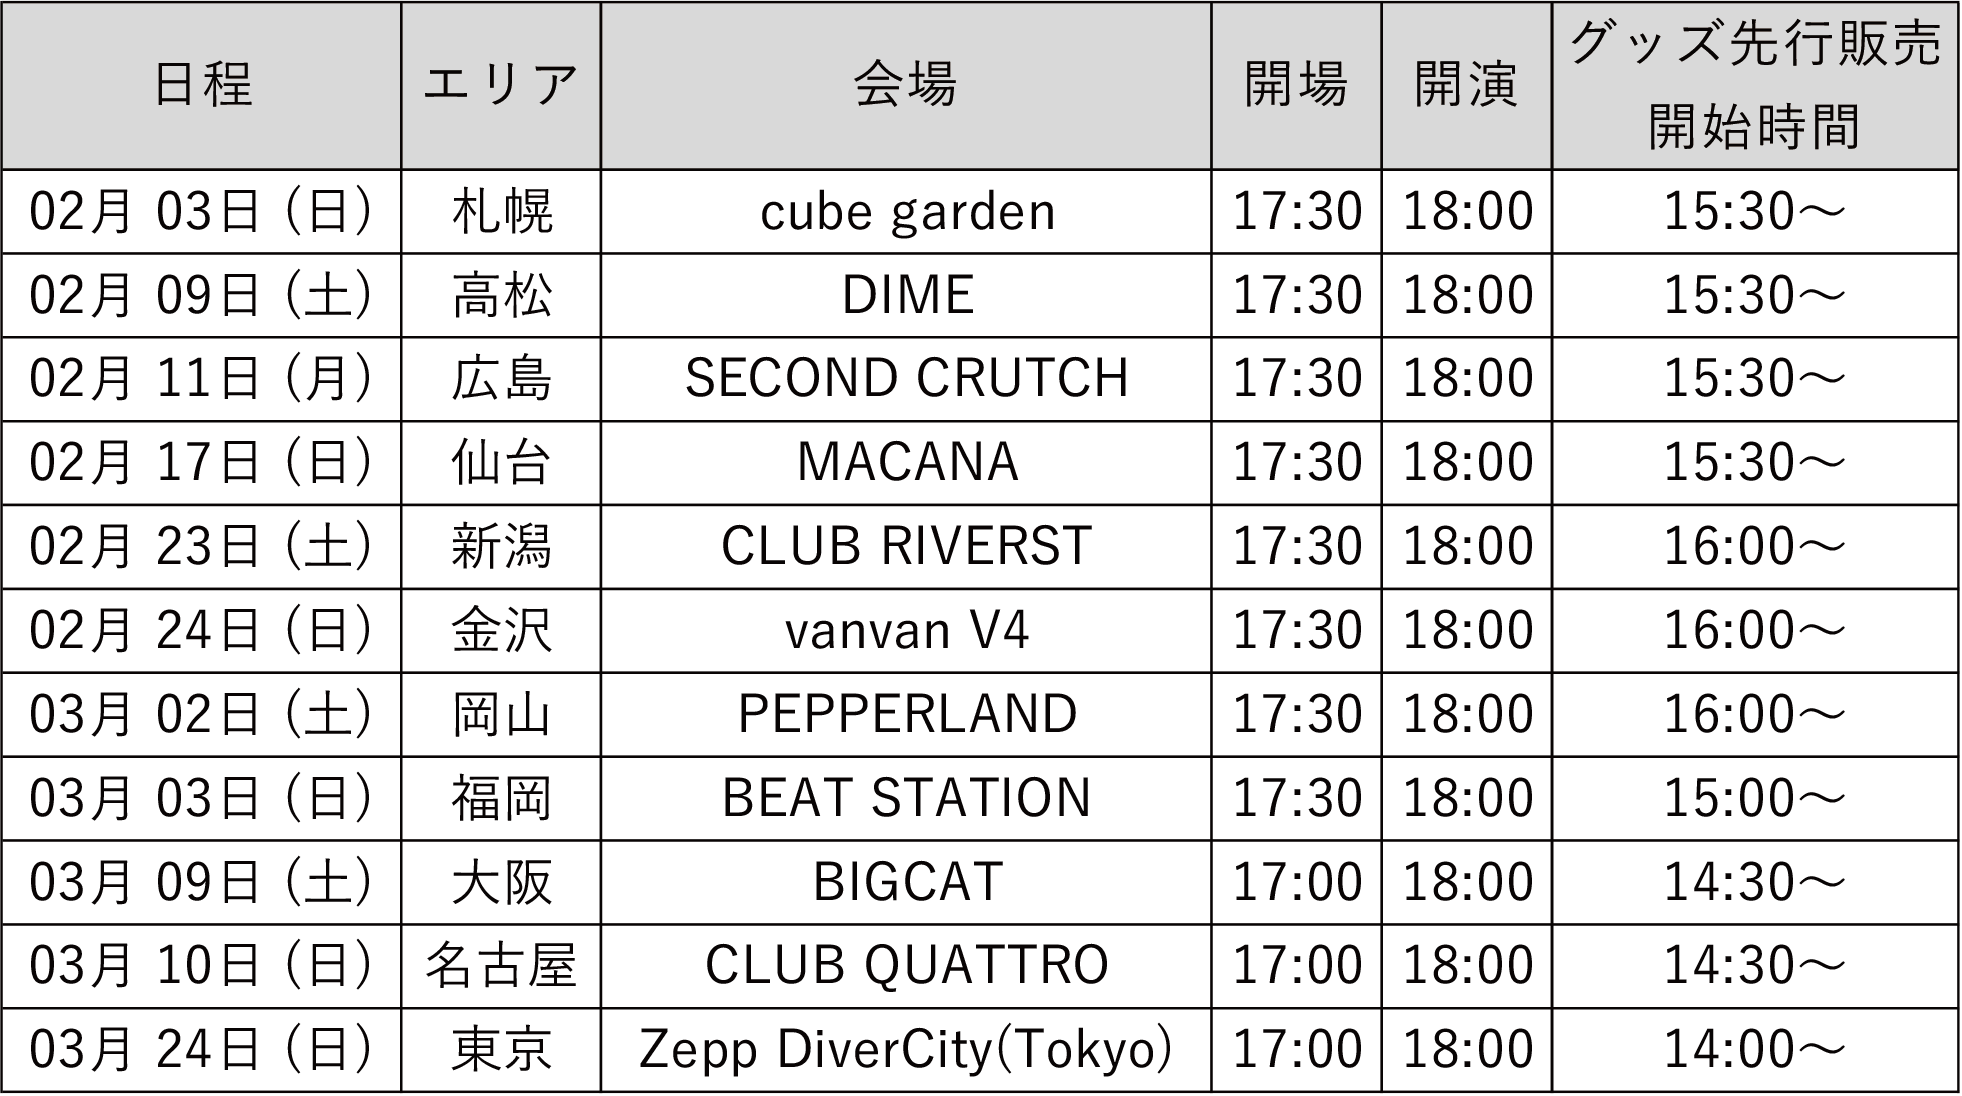 サイダーガール TOUR2019 2/3札幌公演 ライブチケット